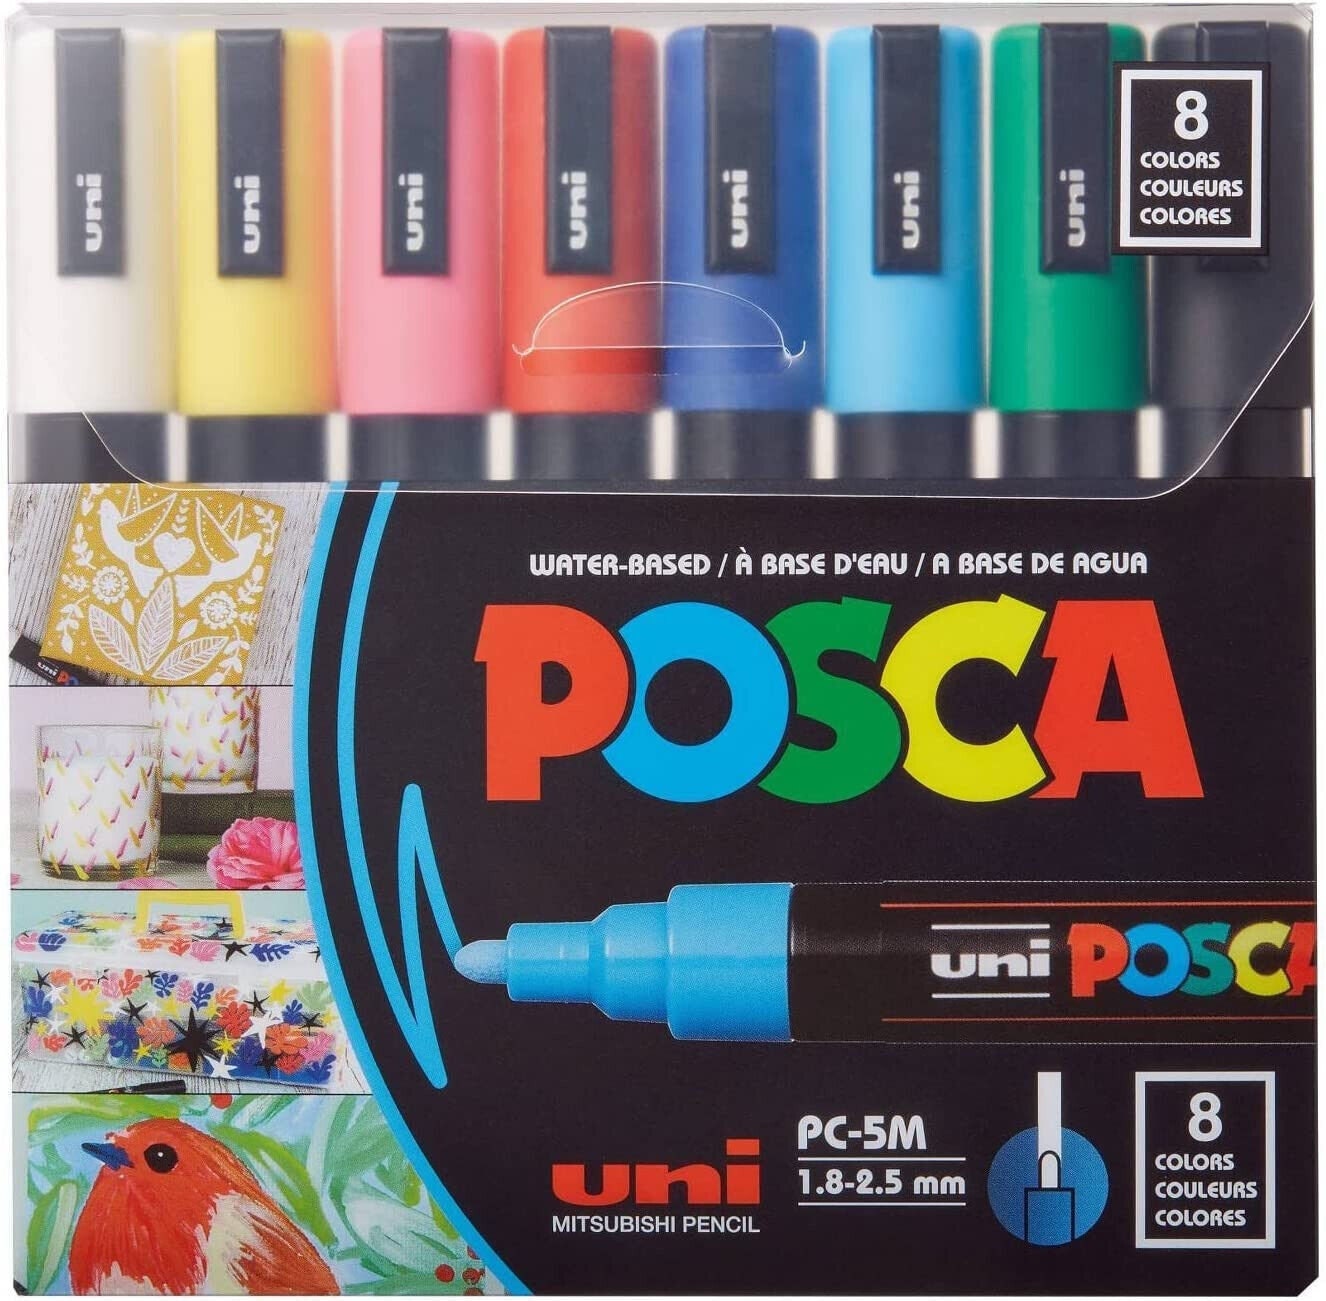 Uni-posca Japan Paint Marker Pen, Medium Point, Set of 8 Color